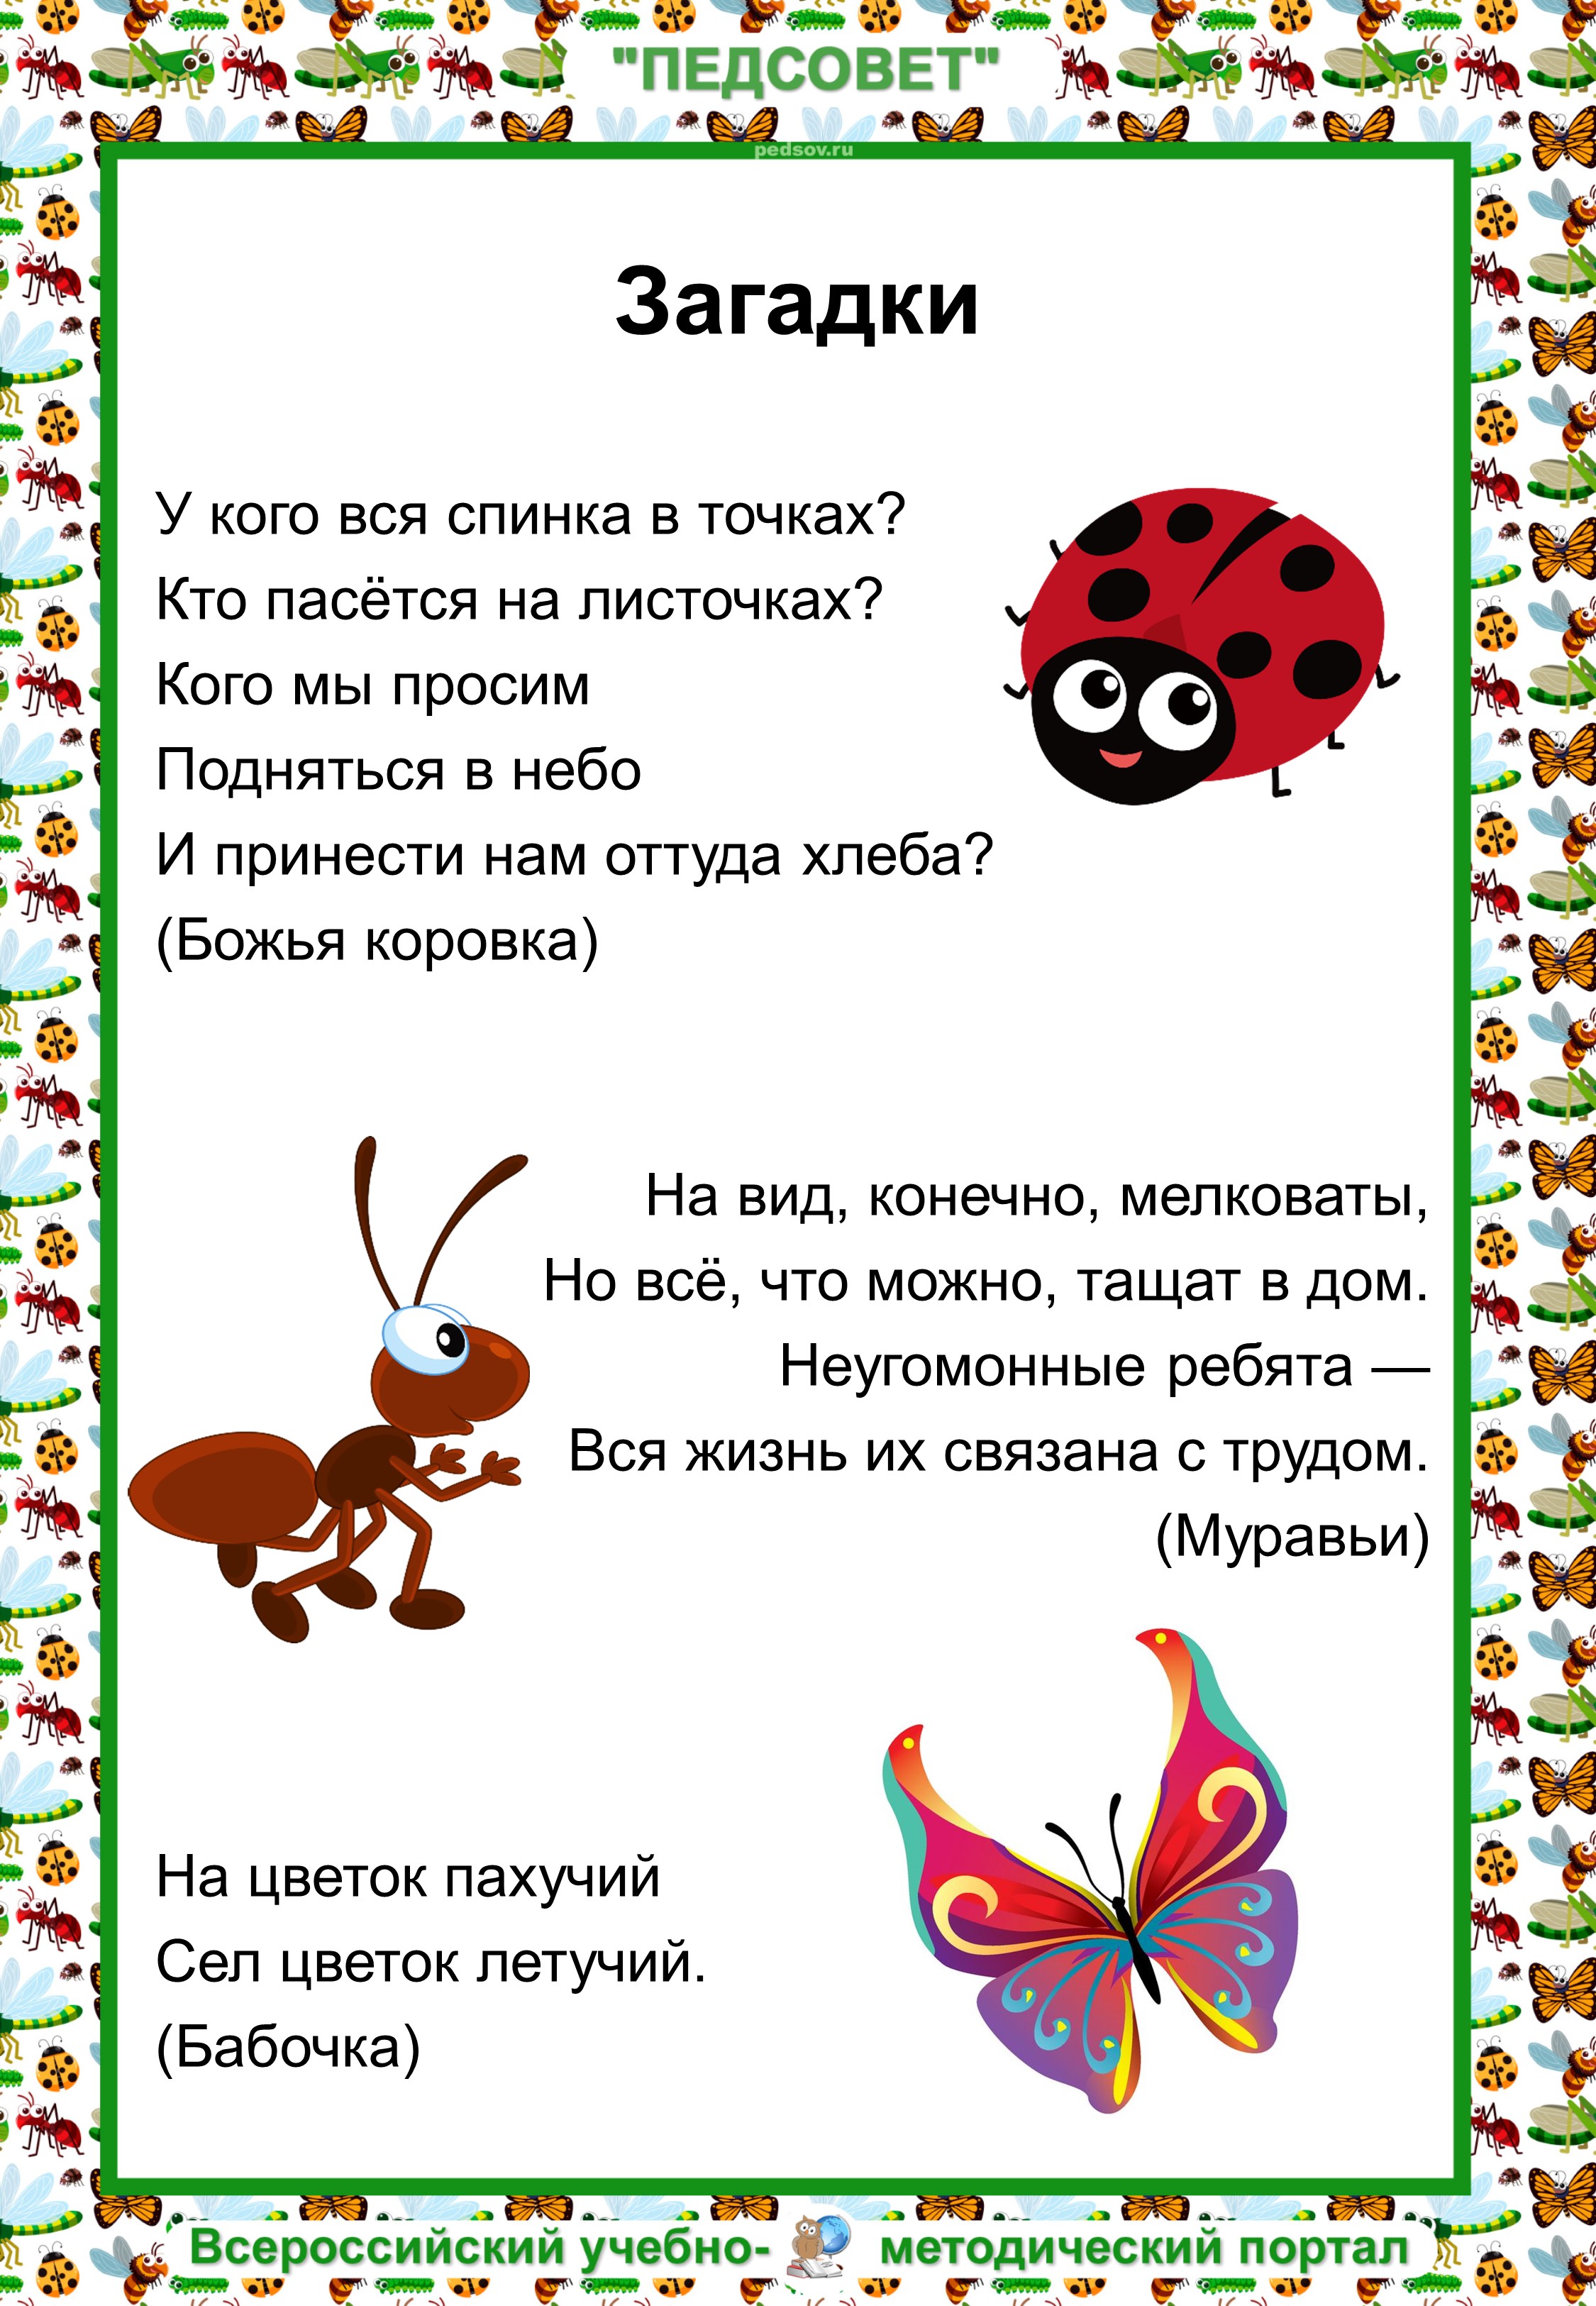 Загадки про насекомых для дошкольников. Загадки про насекомых для детей. Три загадки про насекомых. Загадки про насекомых для детей 3-4 лет.